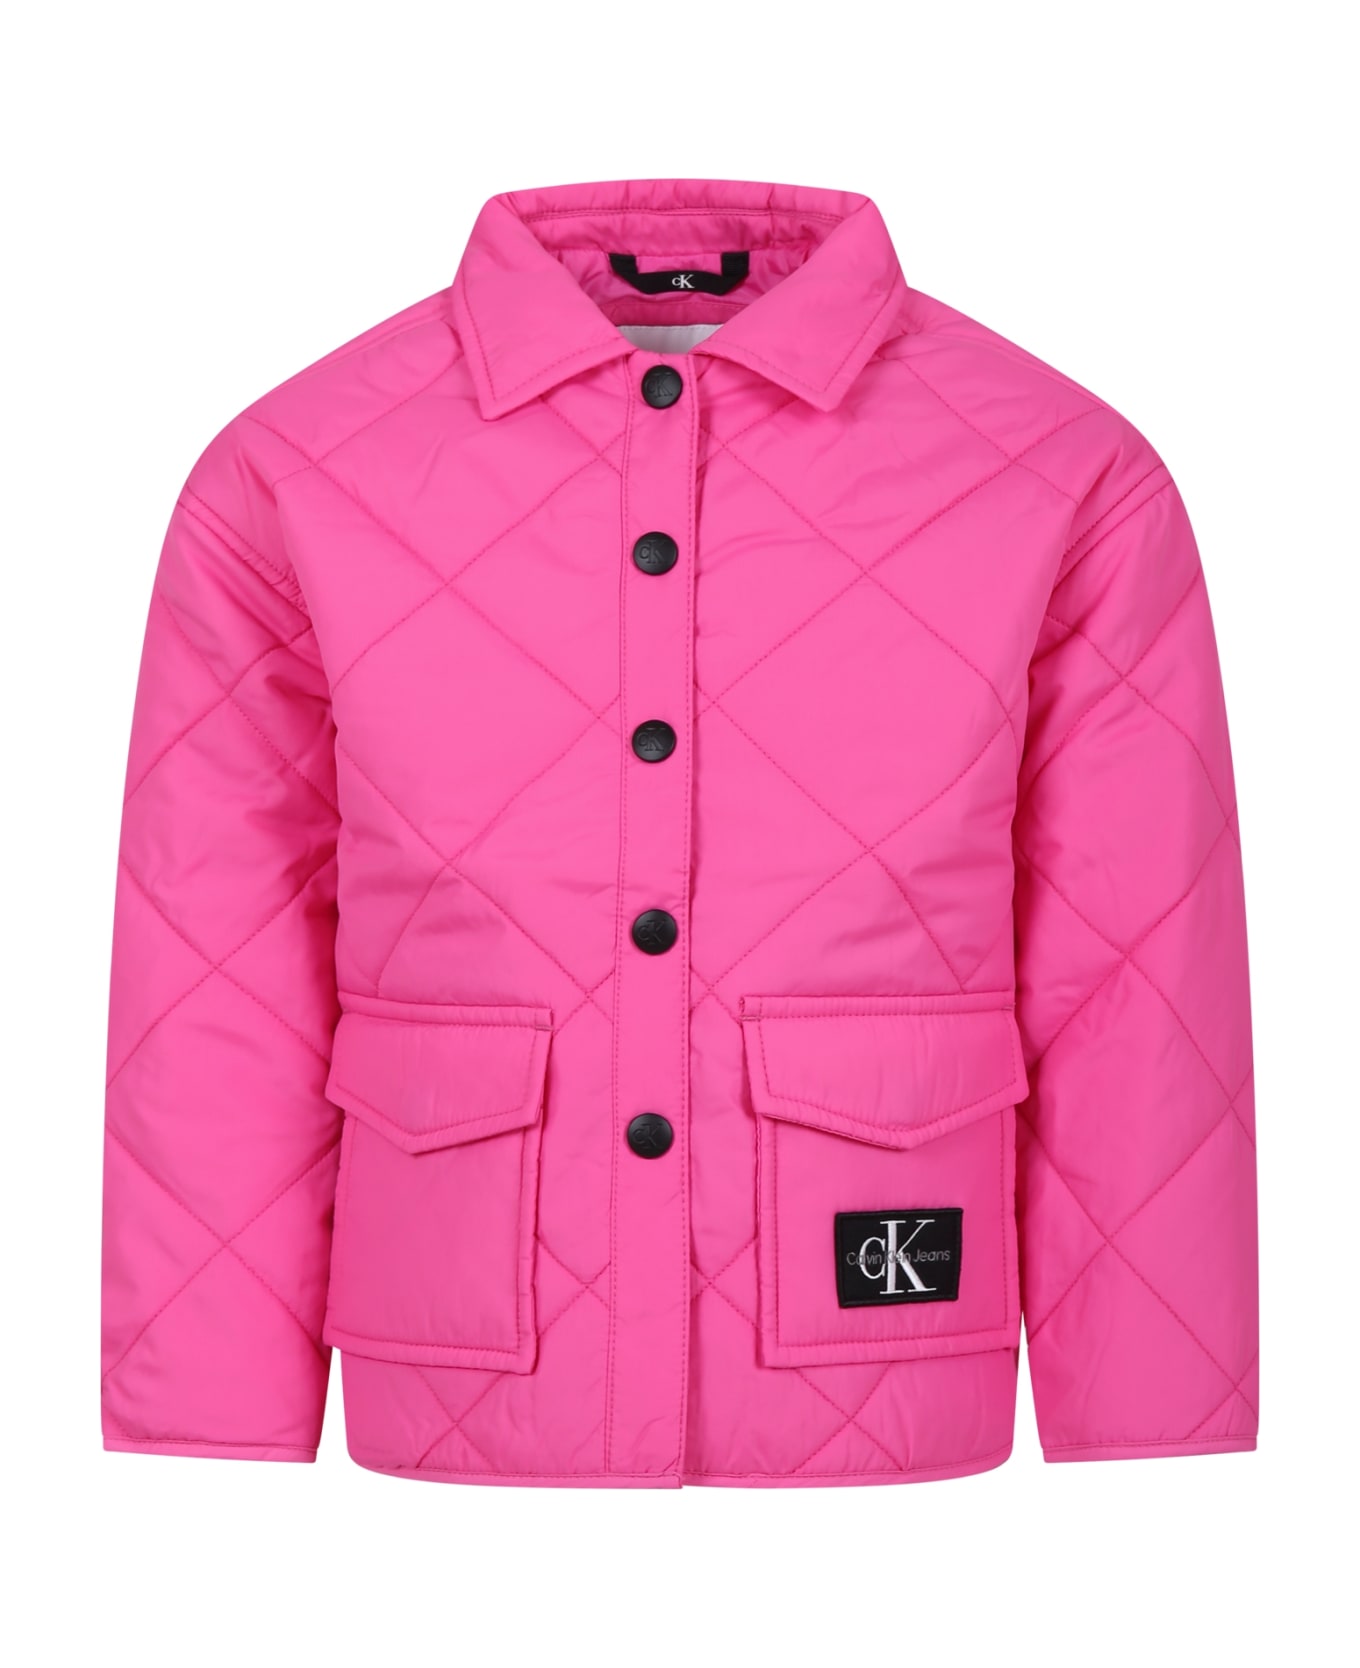 Calvin Klein Fuchsia Down Jacket For Girl With Logo - Fuchsia